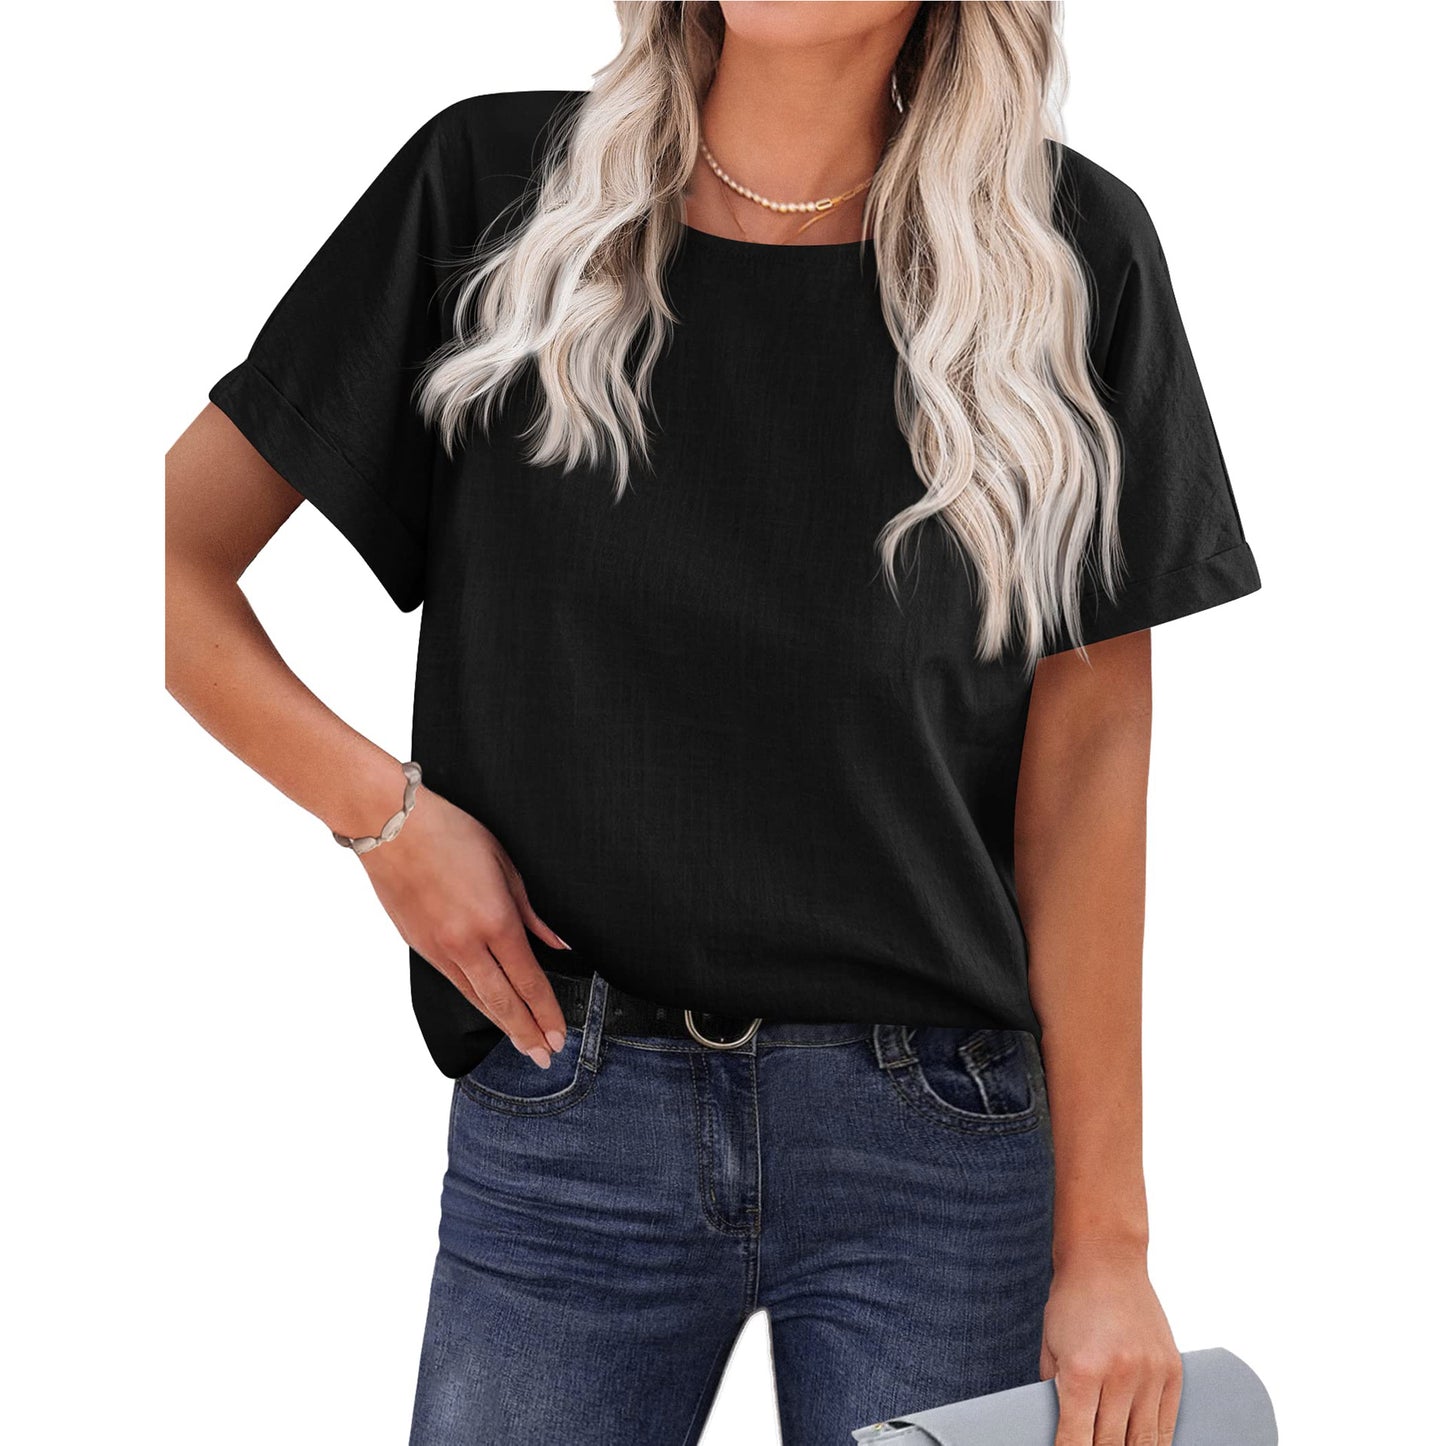 Women's Shirt Short-sleeved Cotton And Linen Top